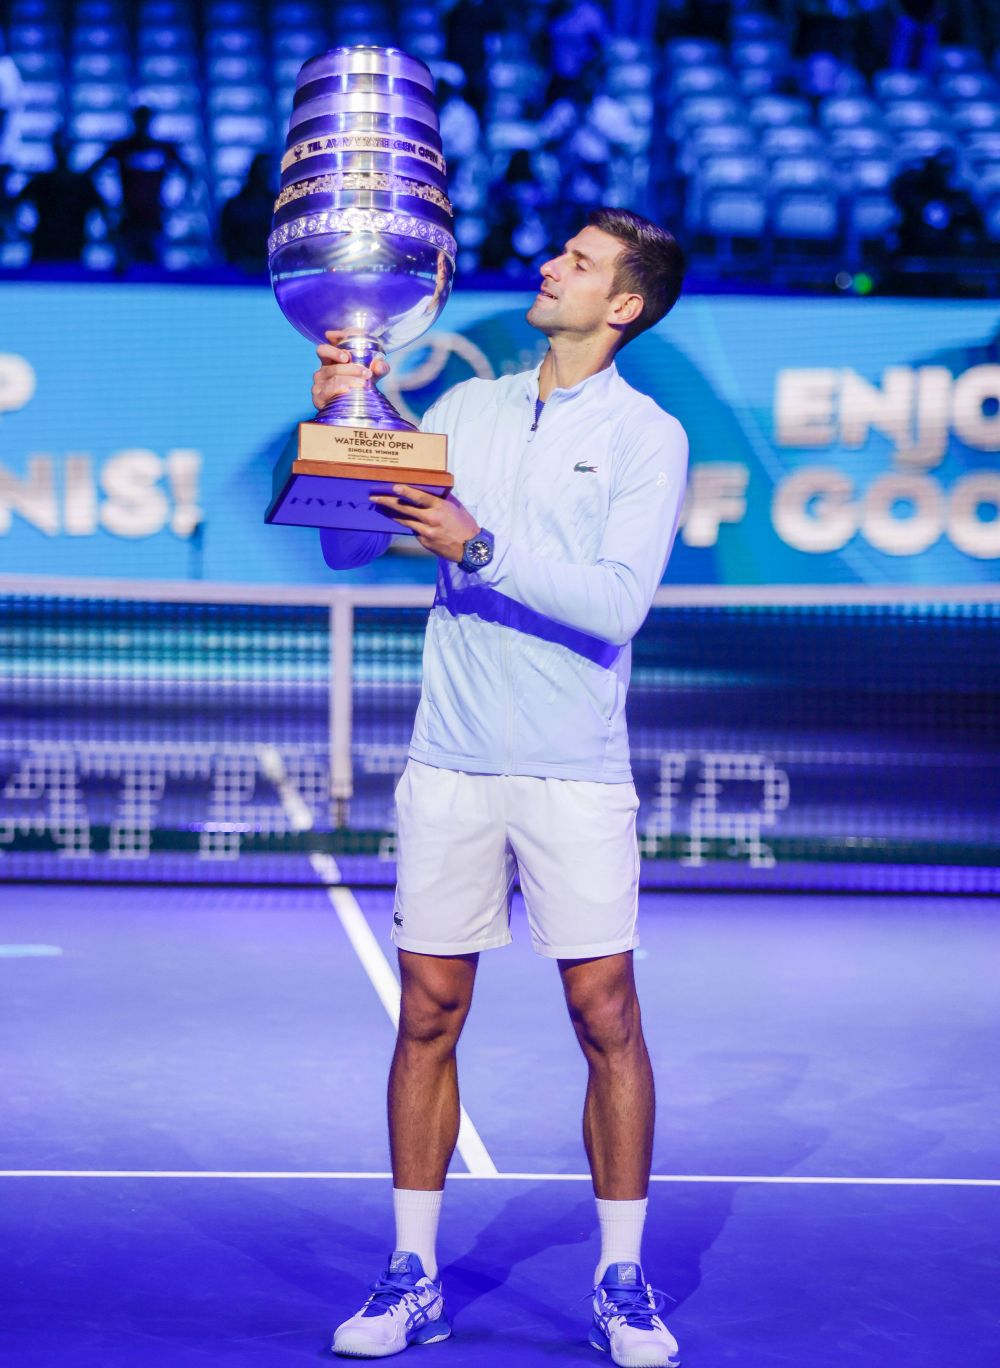 Pofta ce-a poftit! Novak Djokovic e din nou pe #1 în clasamentul ATP. Ce s-a întâmplat cu Alcaraz _4